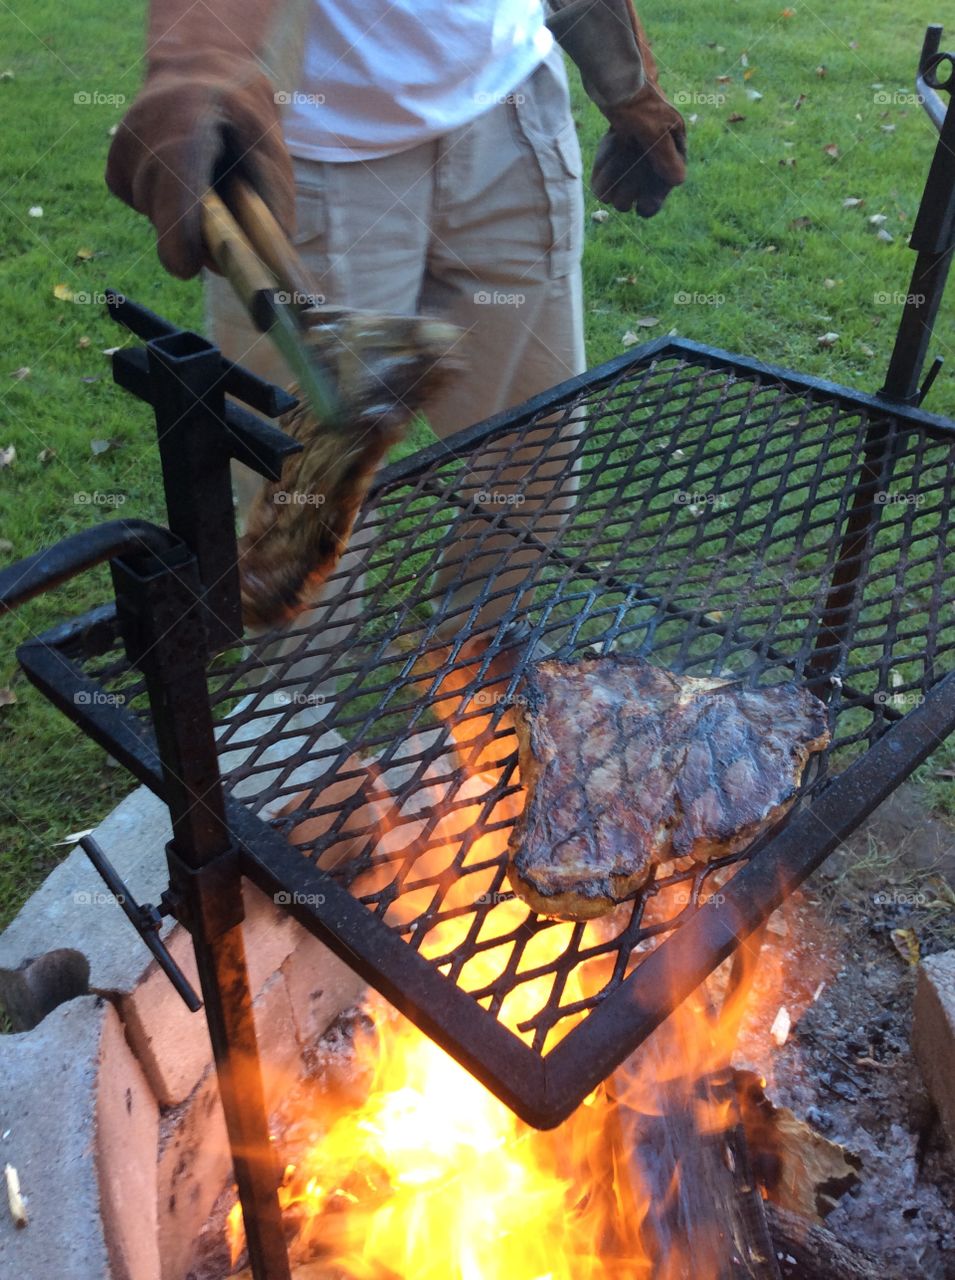 Steak over fire 